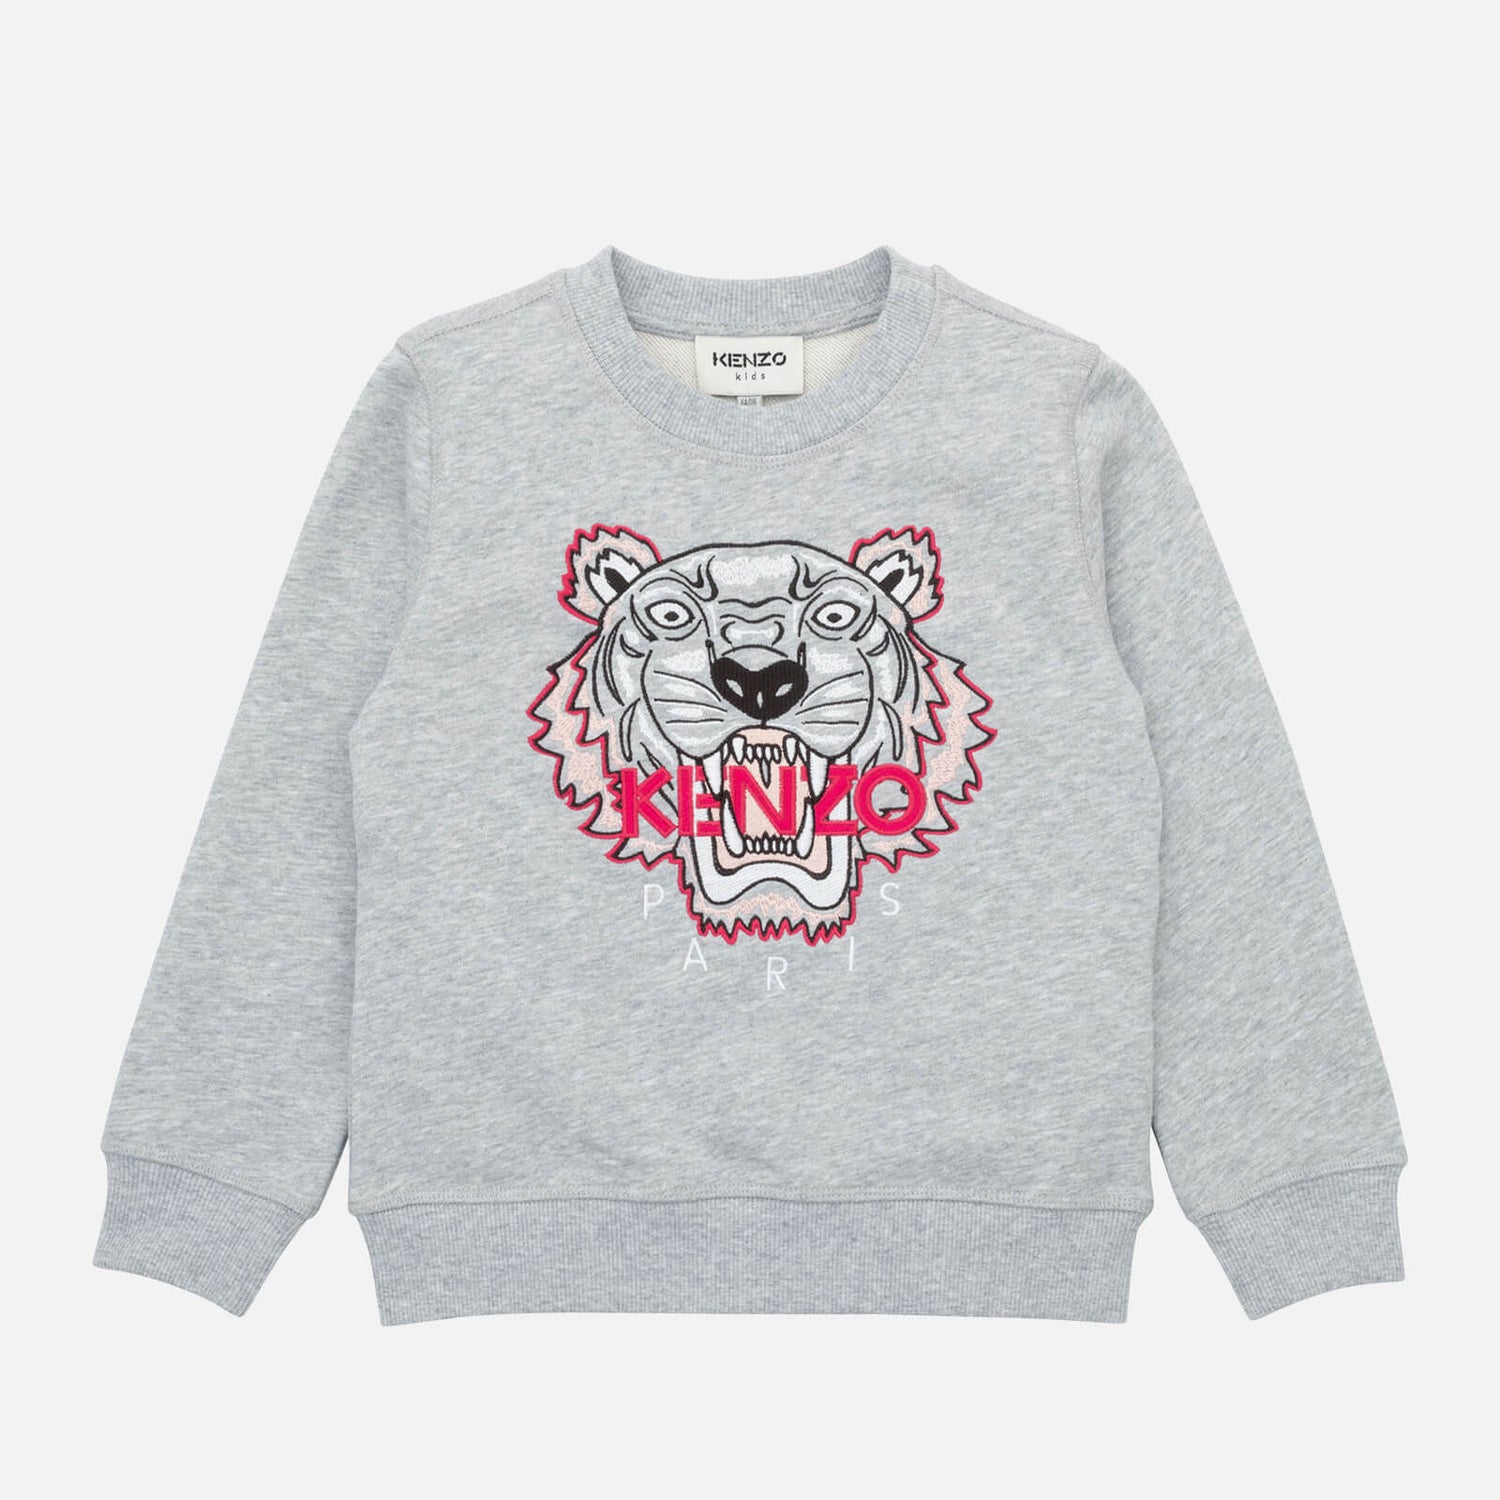 KENZO Girls' Cotton-Jersey Sweatshirt - 4 Years